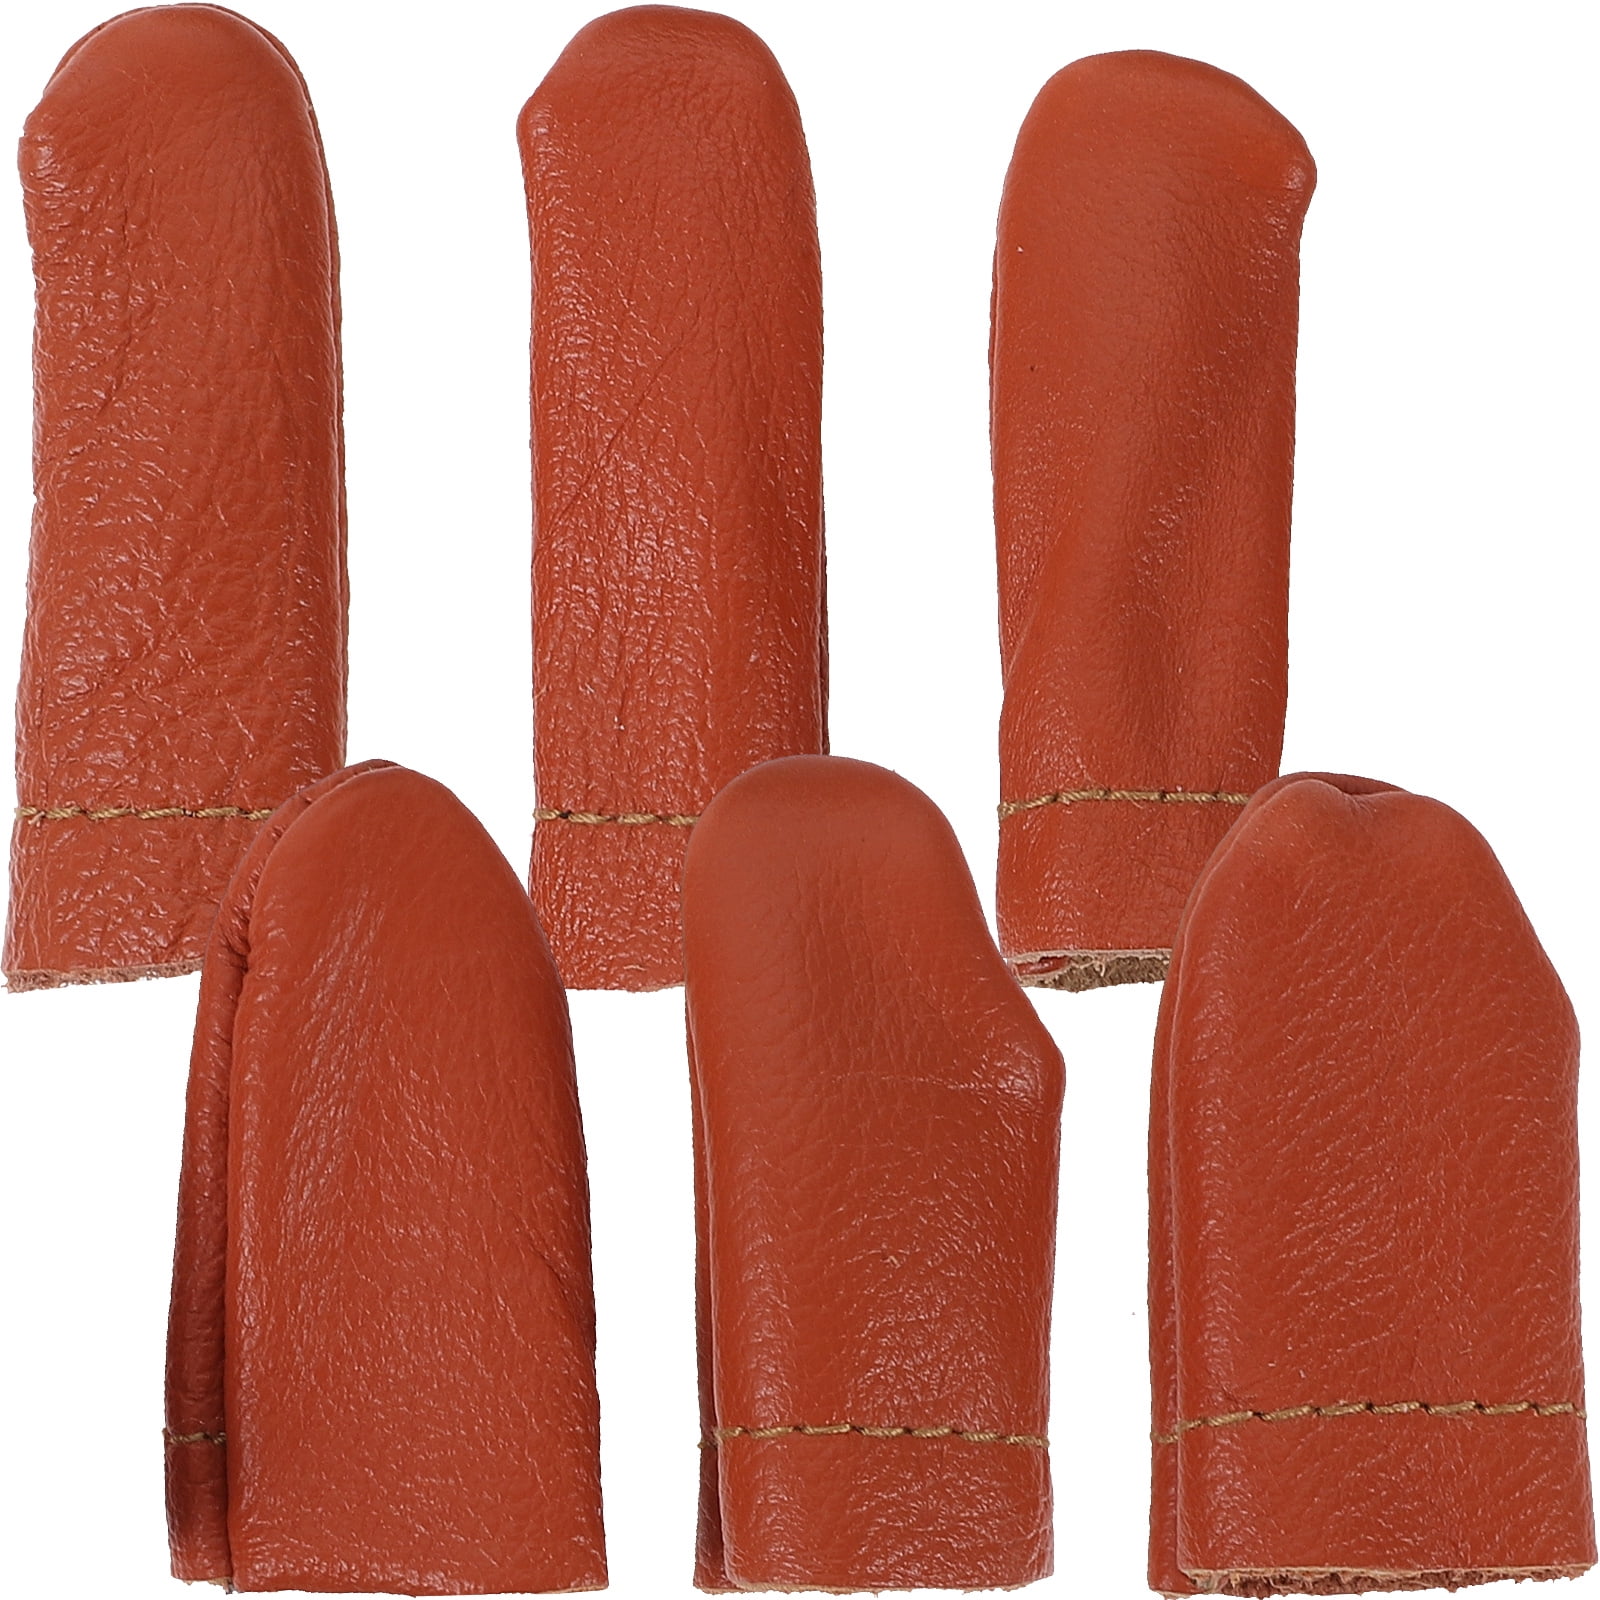 ADOCARN 4 Sets Leather Finger Cots Needlework Finger Sleeve Finger